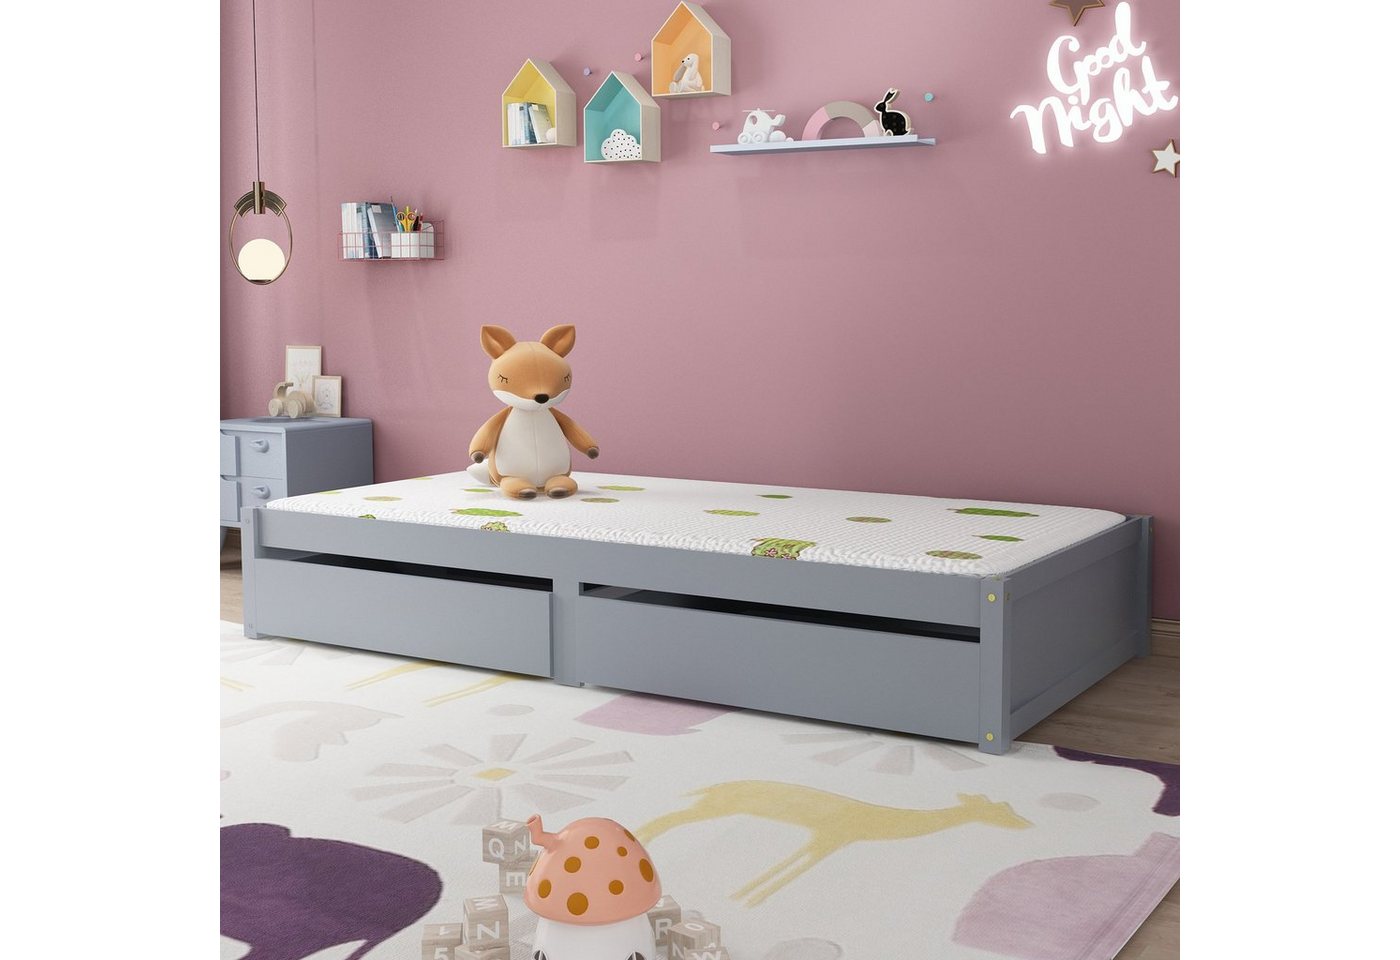 Fangqi Kinderbett 90x200cm, Kinderbett mit Vollabtrennung, weiß/Grau, Mehrzweckbettrahmen umbaubar in zwei getrennte Betten von Fangqi